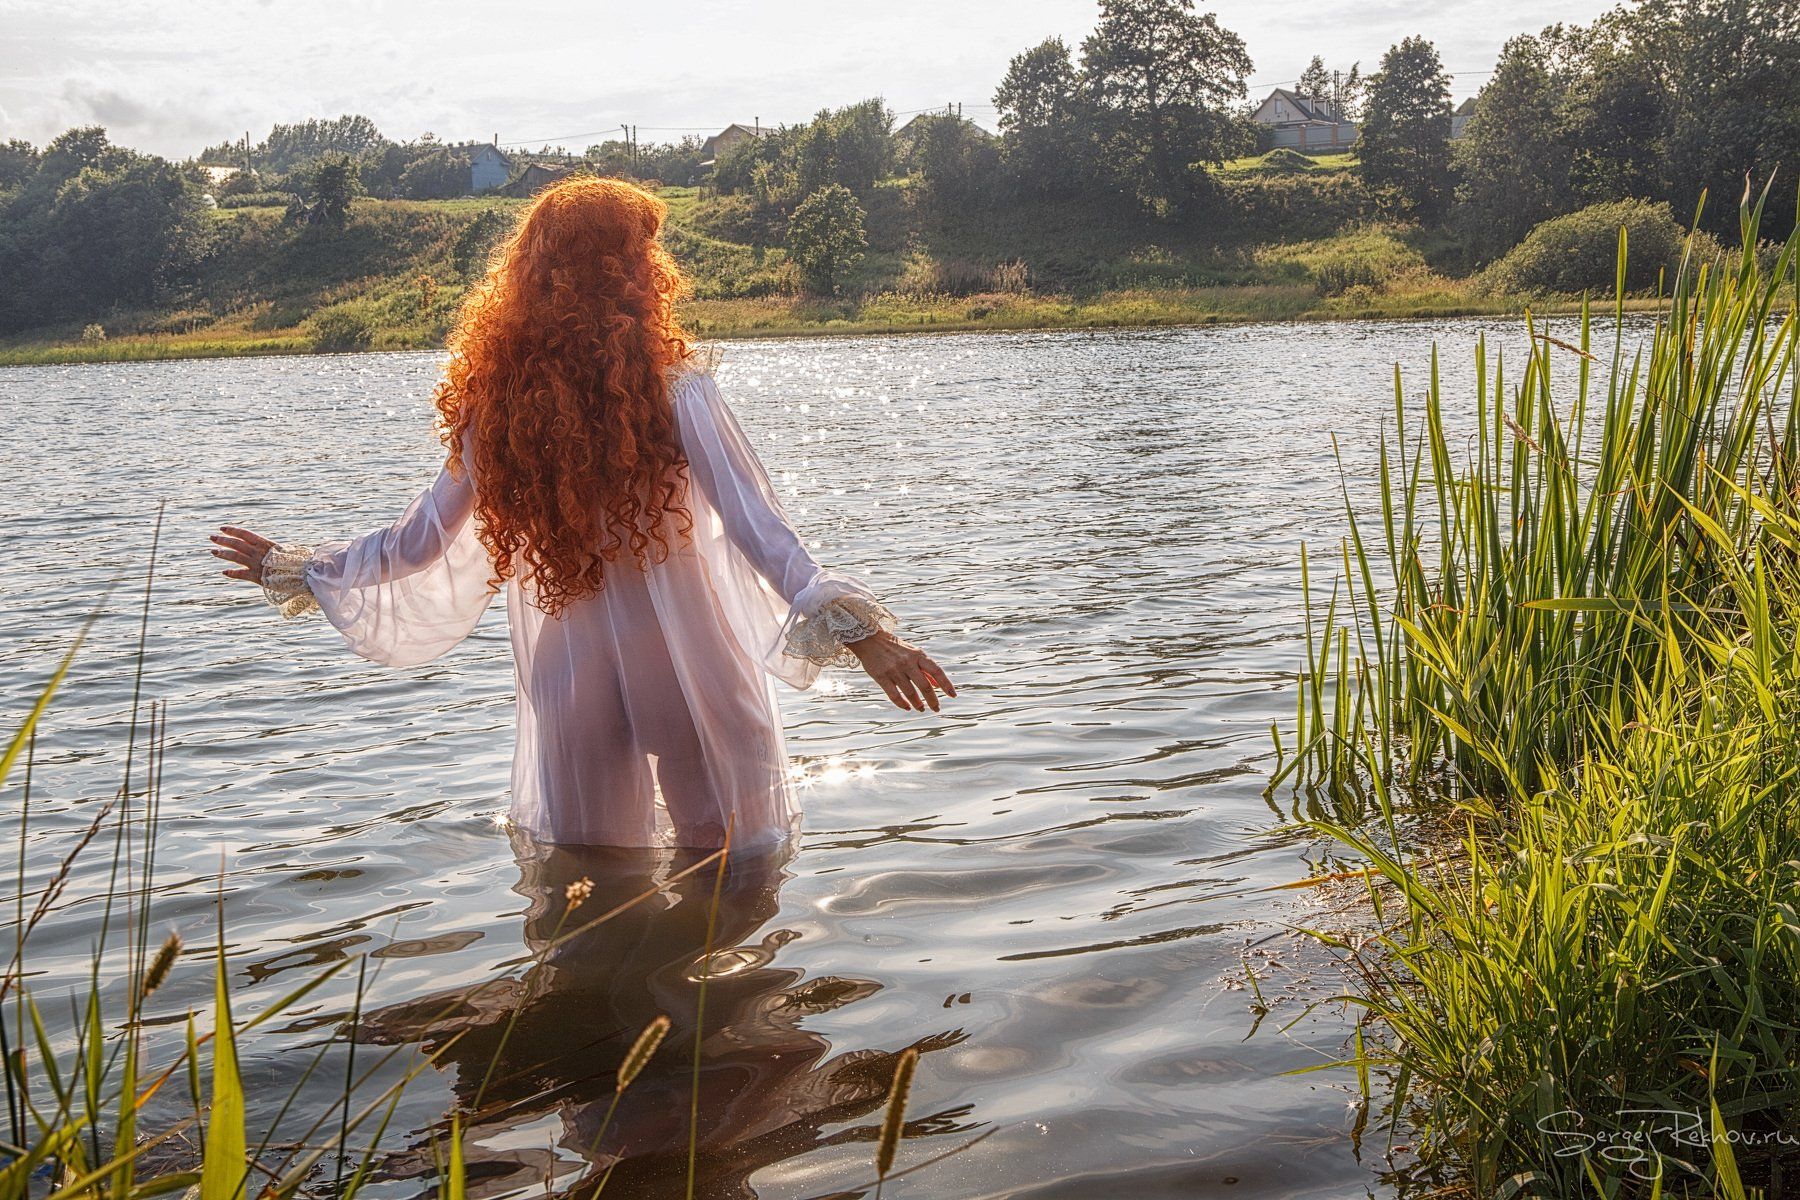 Грудастая женщина купается голой перед любовником в озере